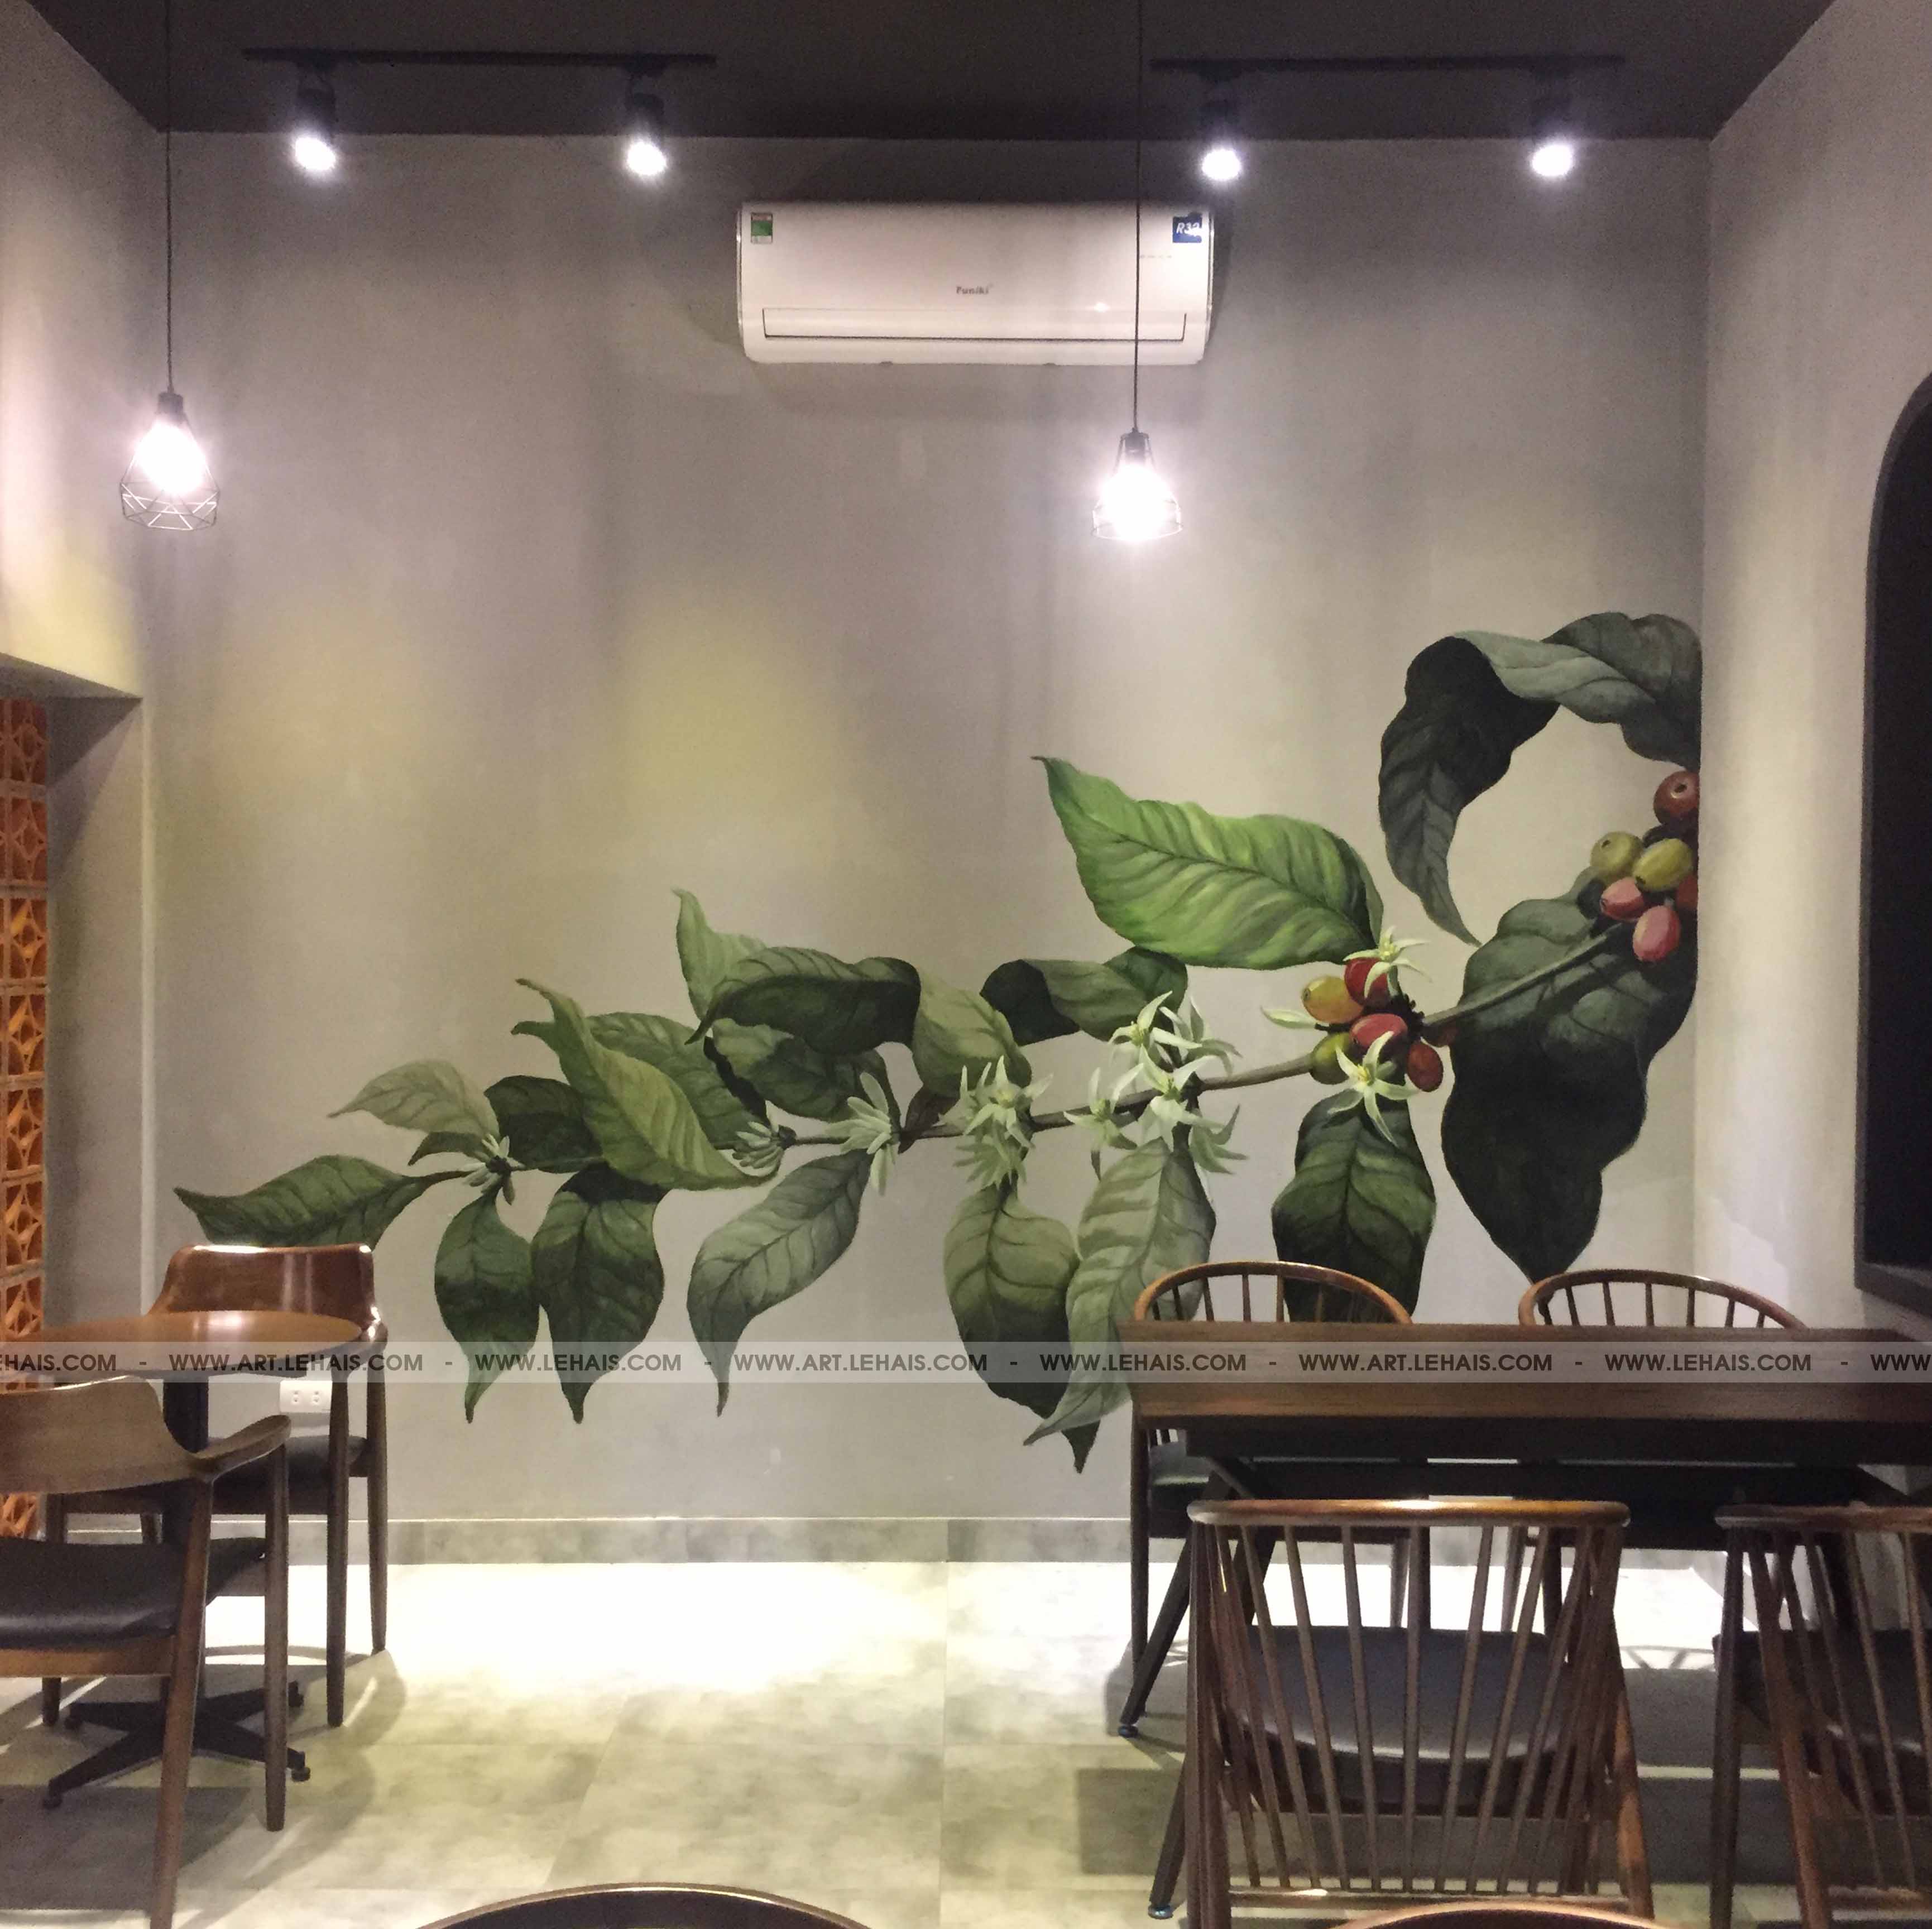 Vẽ cành cafe 3D trên tường quán cafe tại Tô Ngọc Vân, Tây Hồ, Hà Nội - TT162LHAR 1